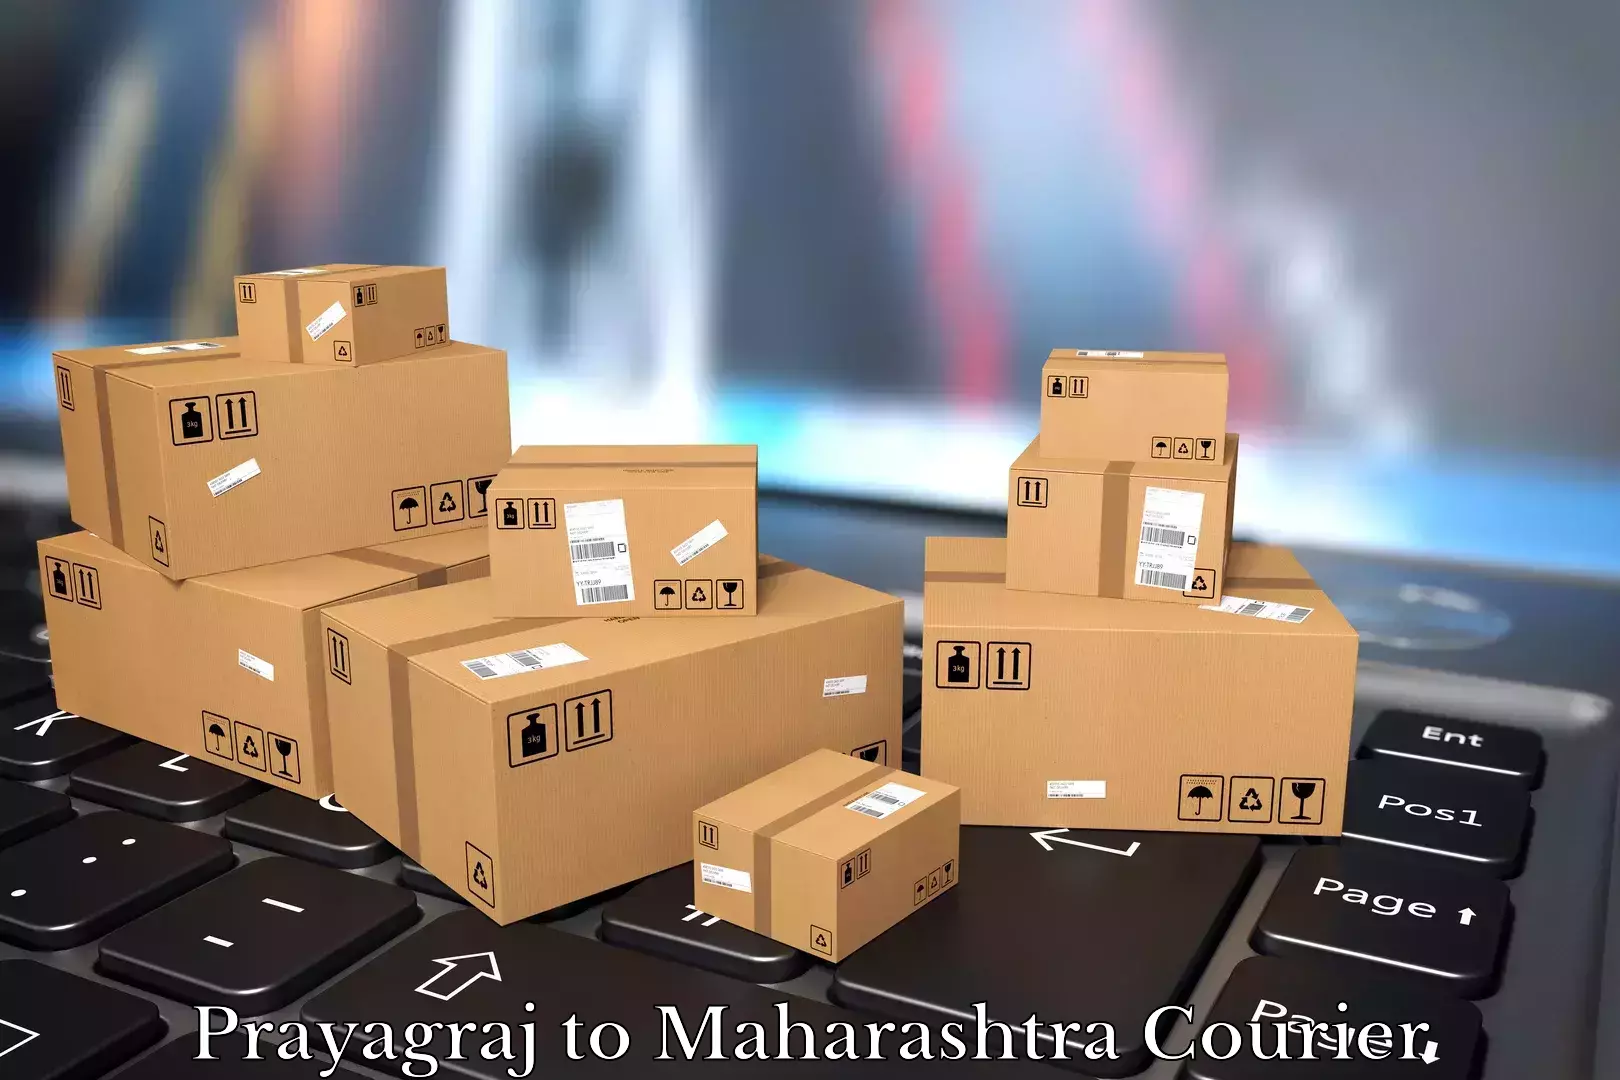 Furniture transport experts Prayagraj to Degloor